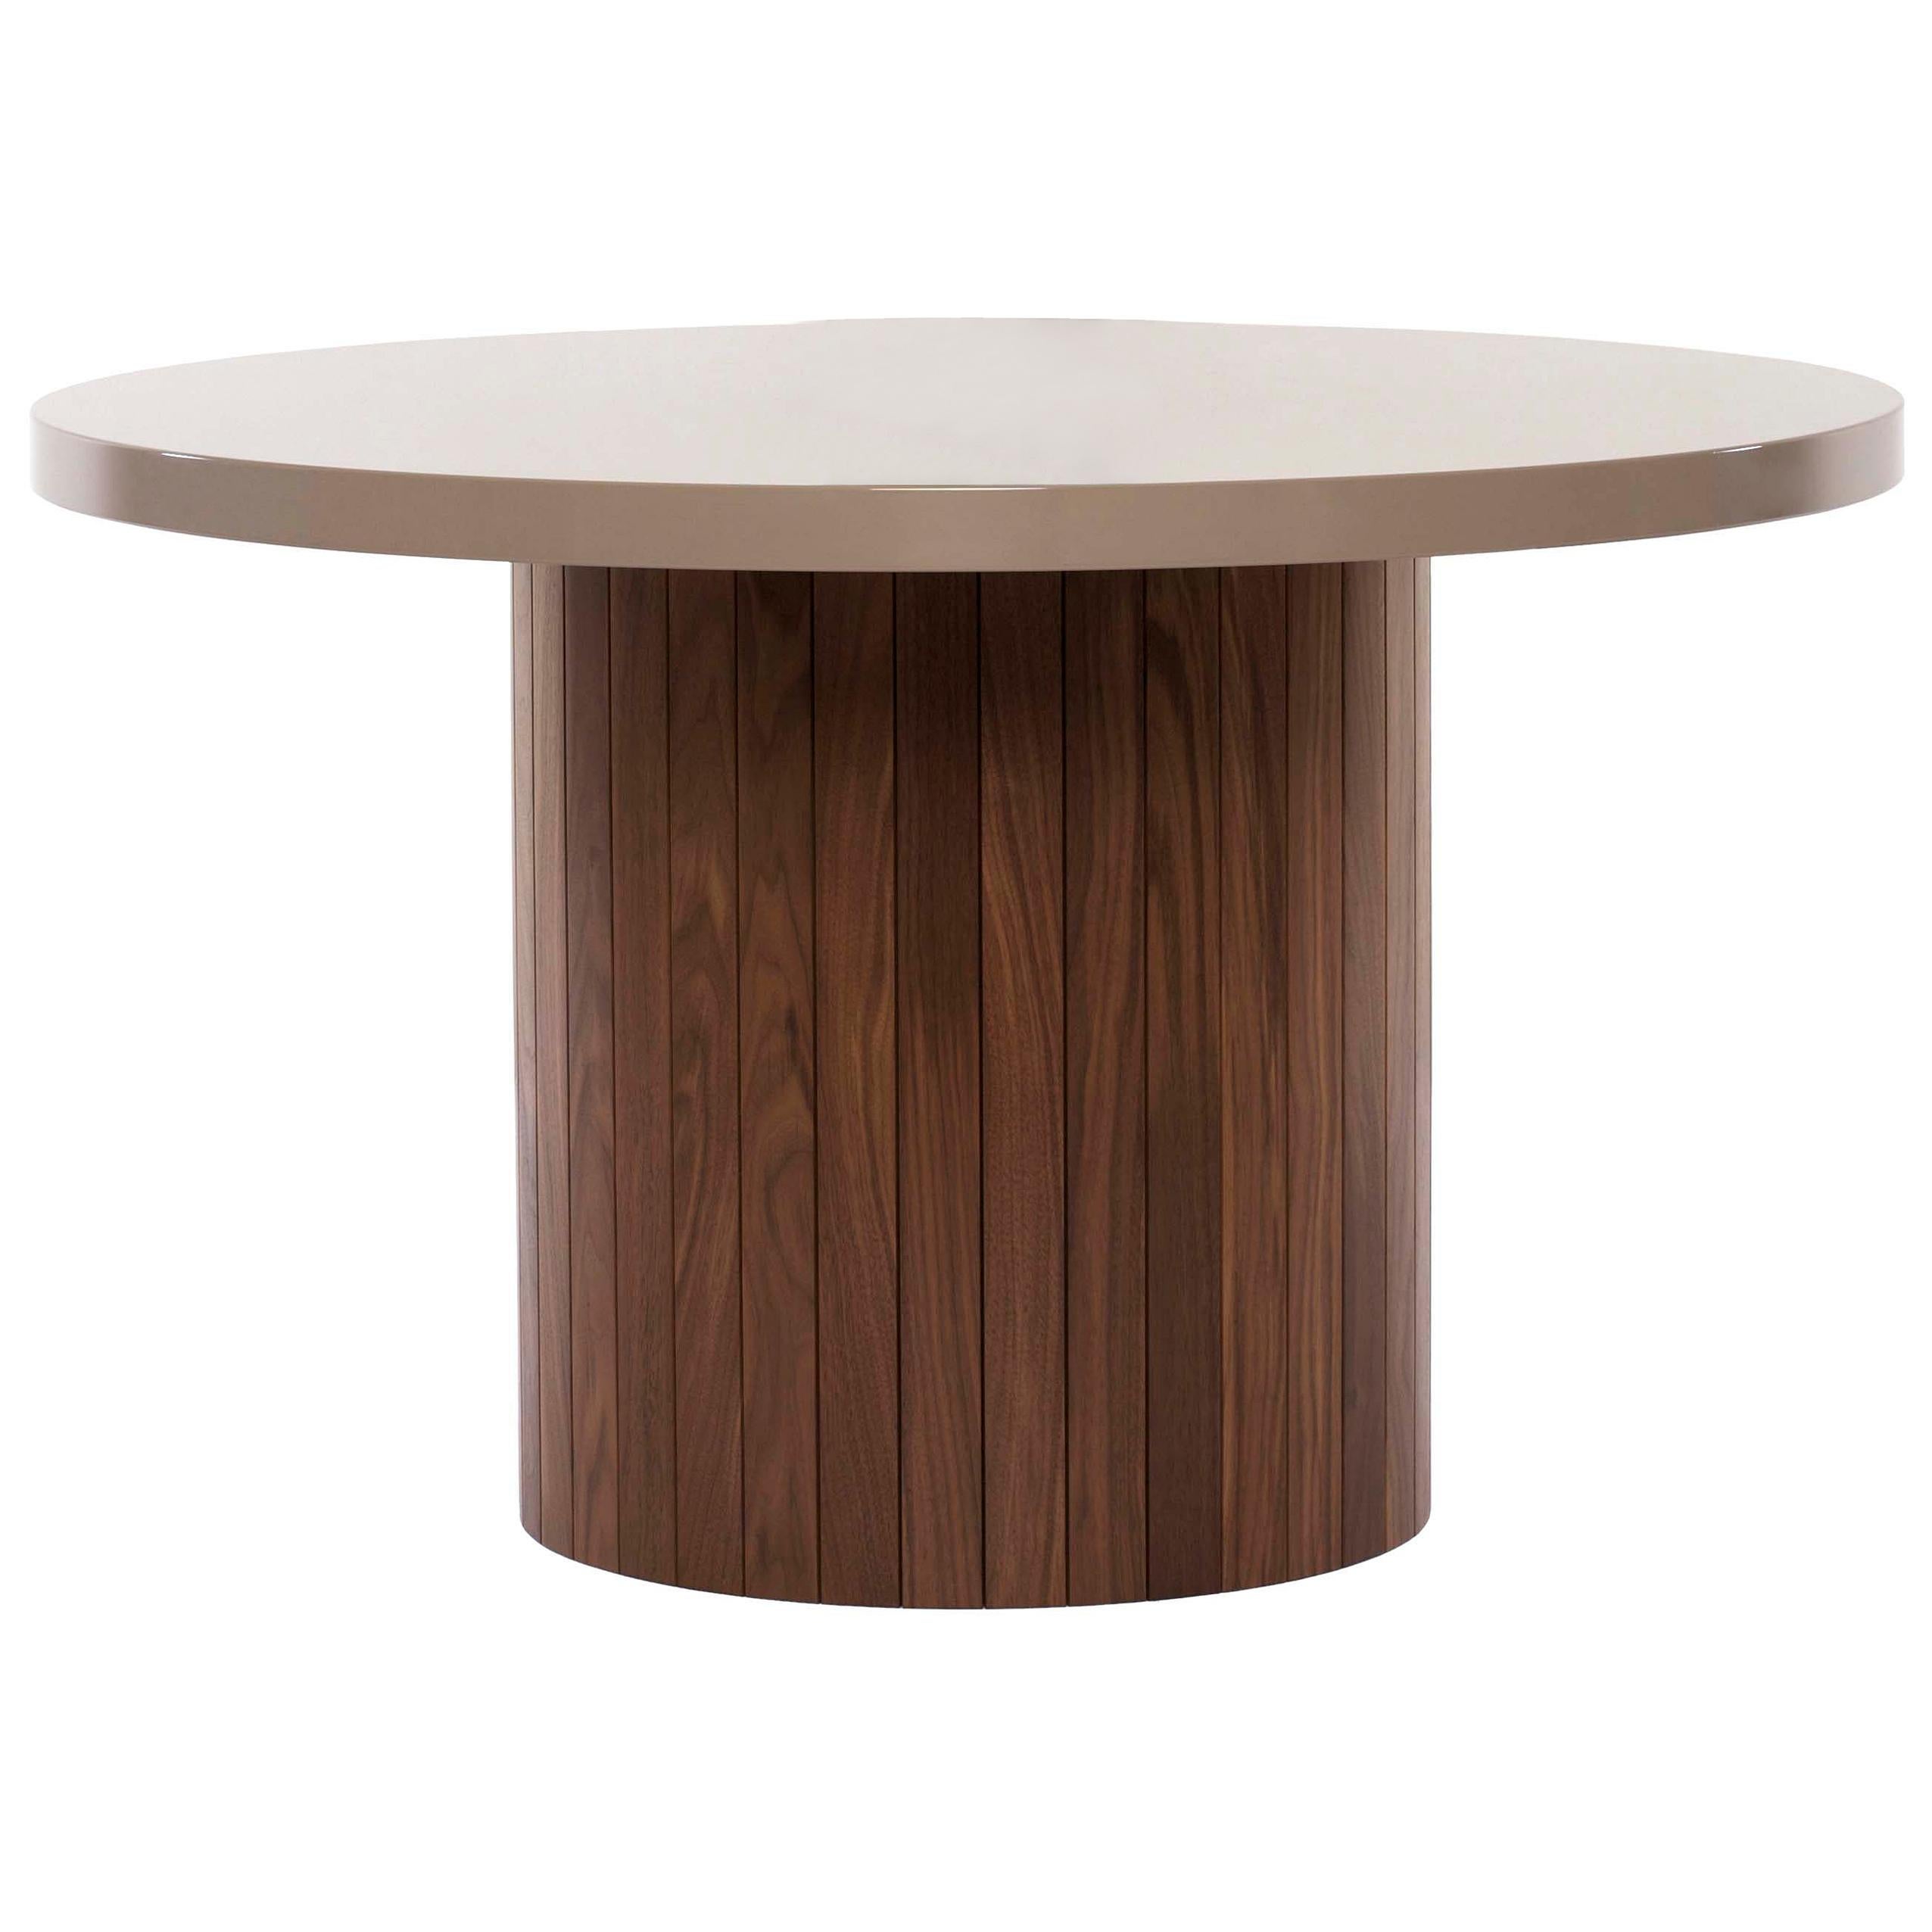 Plank-Tisch mit abgerundeter Lackplatte und Holzsockel aus Nussbaumholz, maßgefertigt auf Bestellung